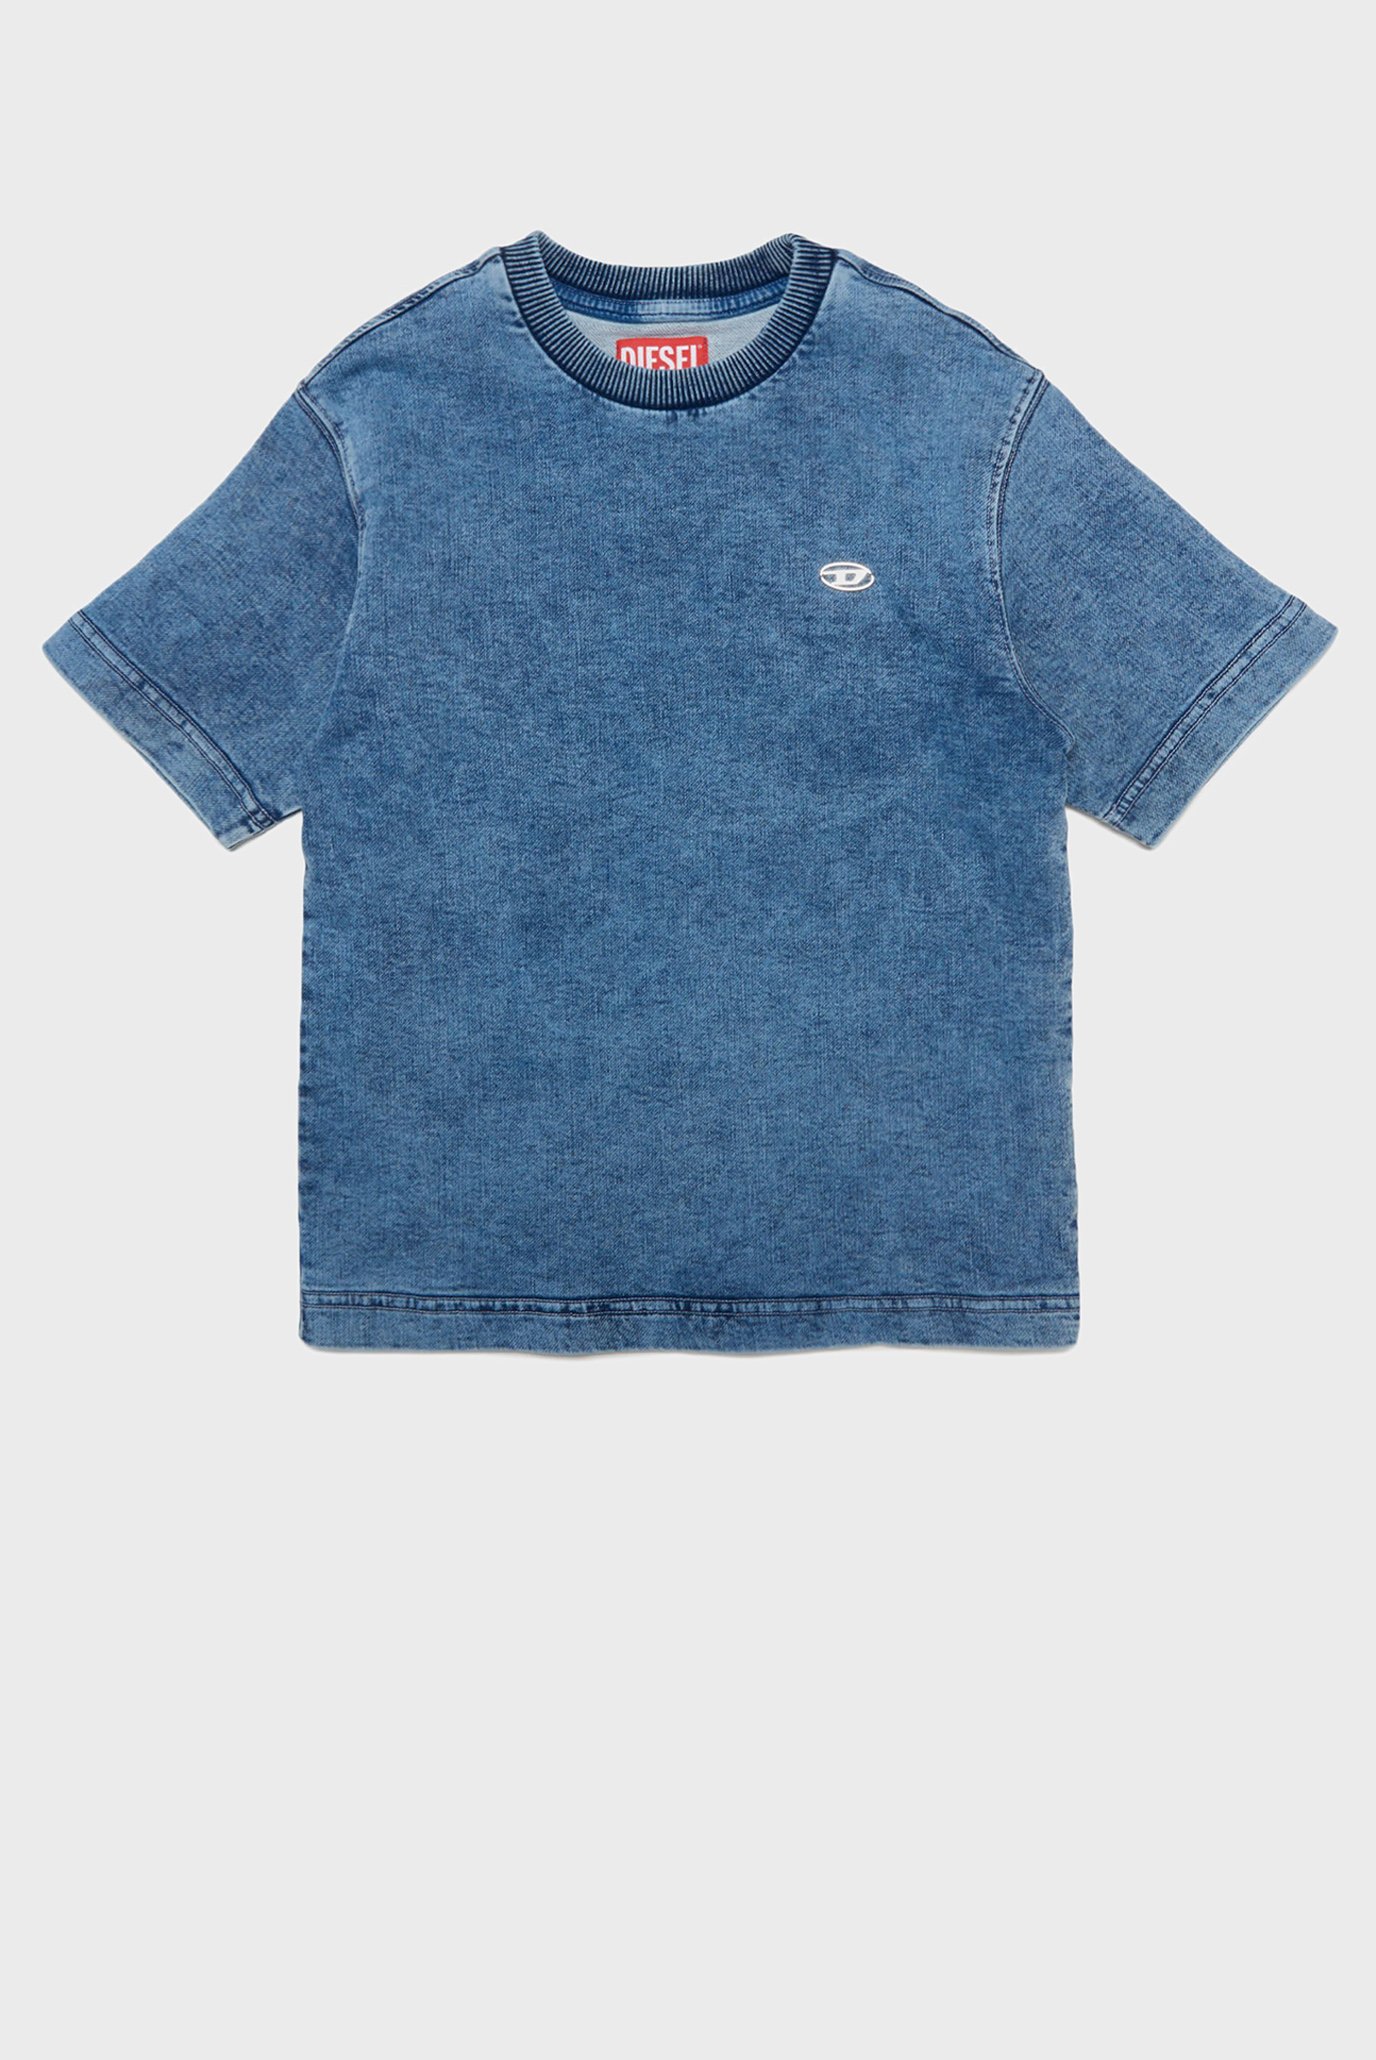 Детская синяя джинсовая футболка TBIGGOR-NE-OVER JJJ T-SHIRT 1